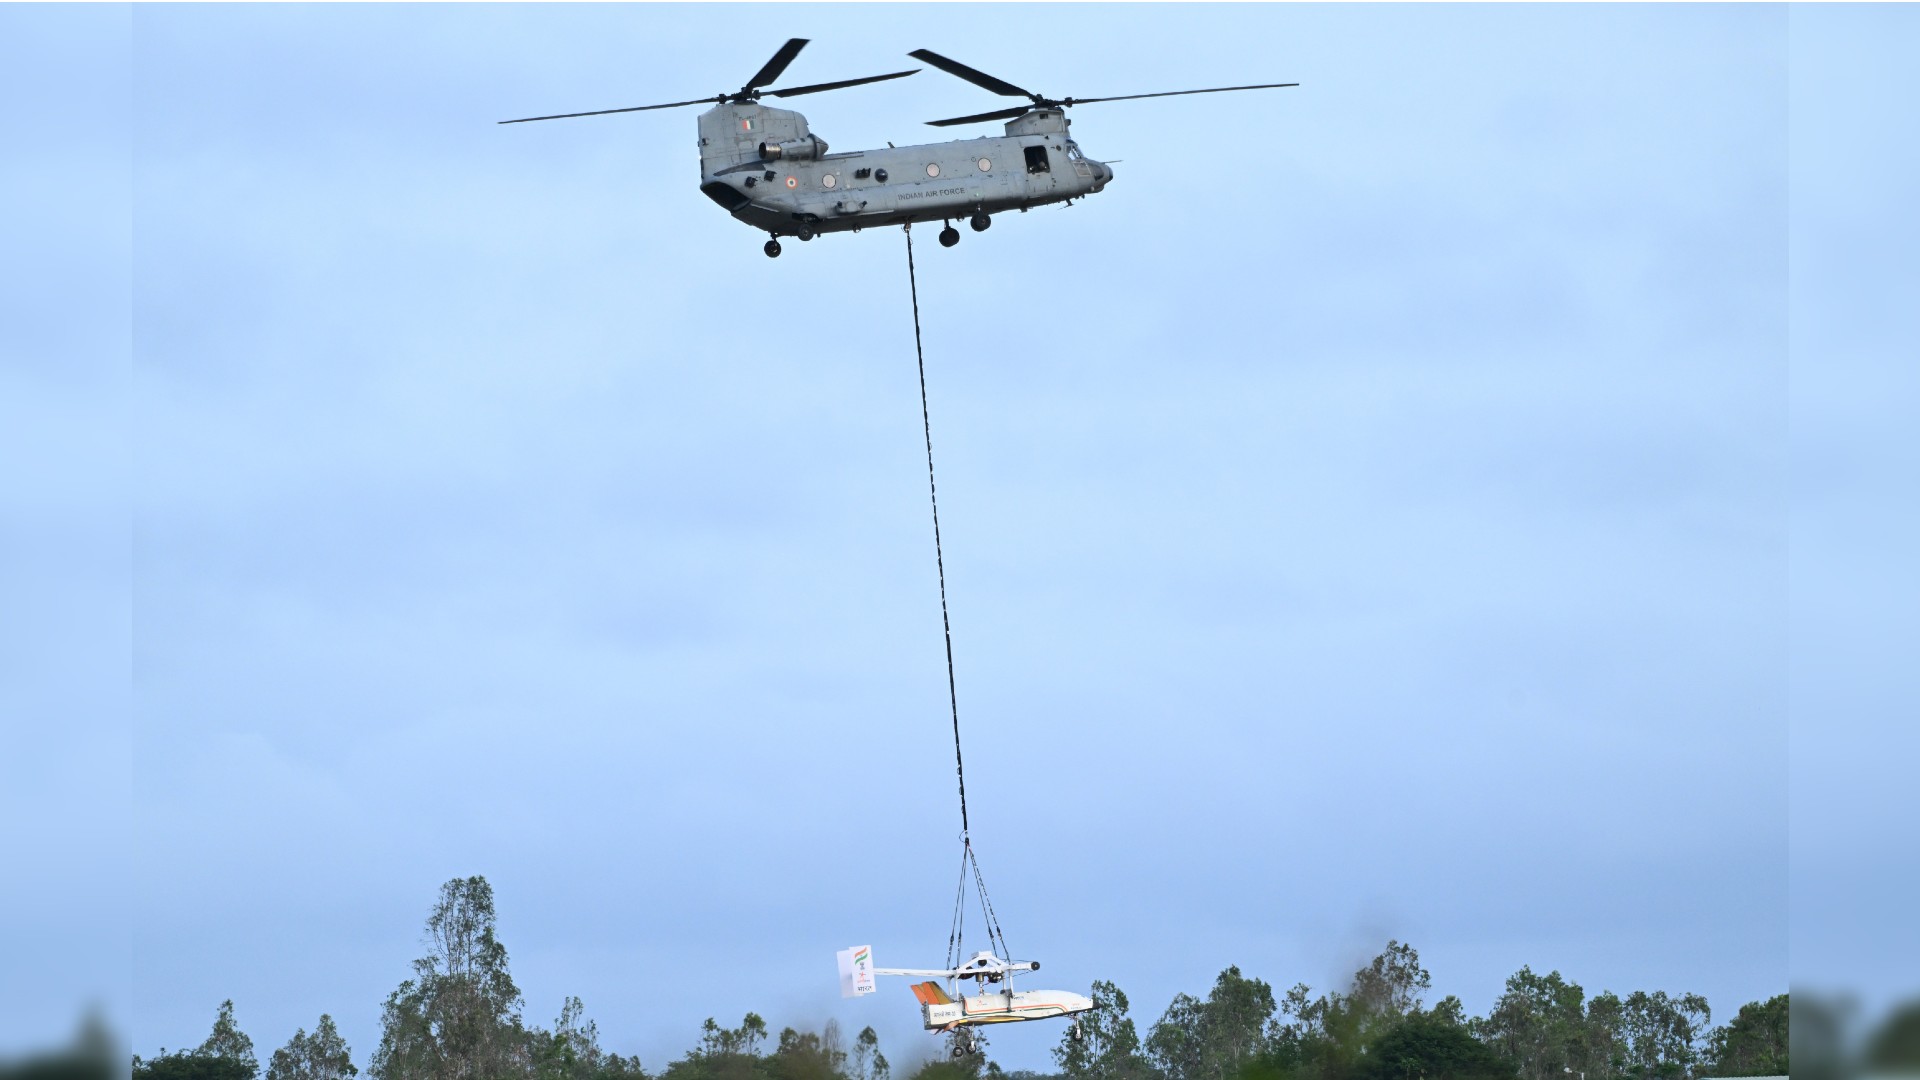 یک هلیکوپتر بزرگ دو روتور هواپیمای سفید و بدون پنجره را در انتهای یک کابل بلند در زیر خود حمل می کند.